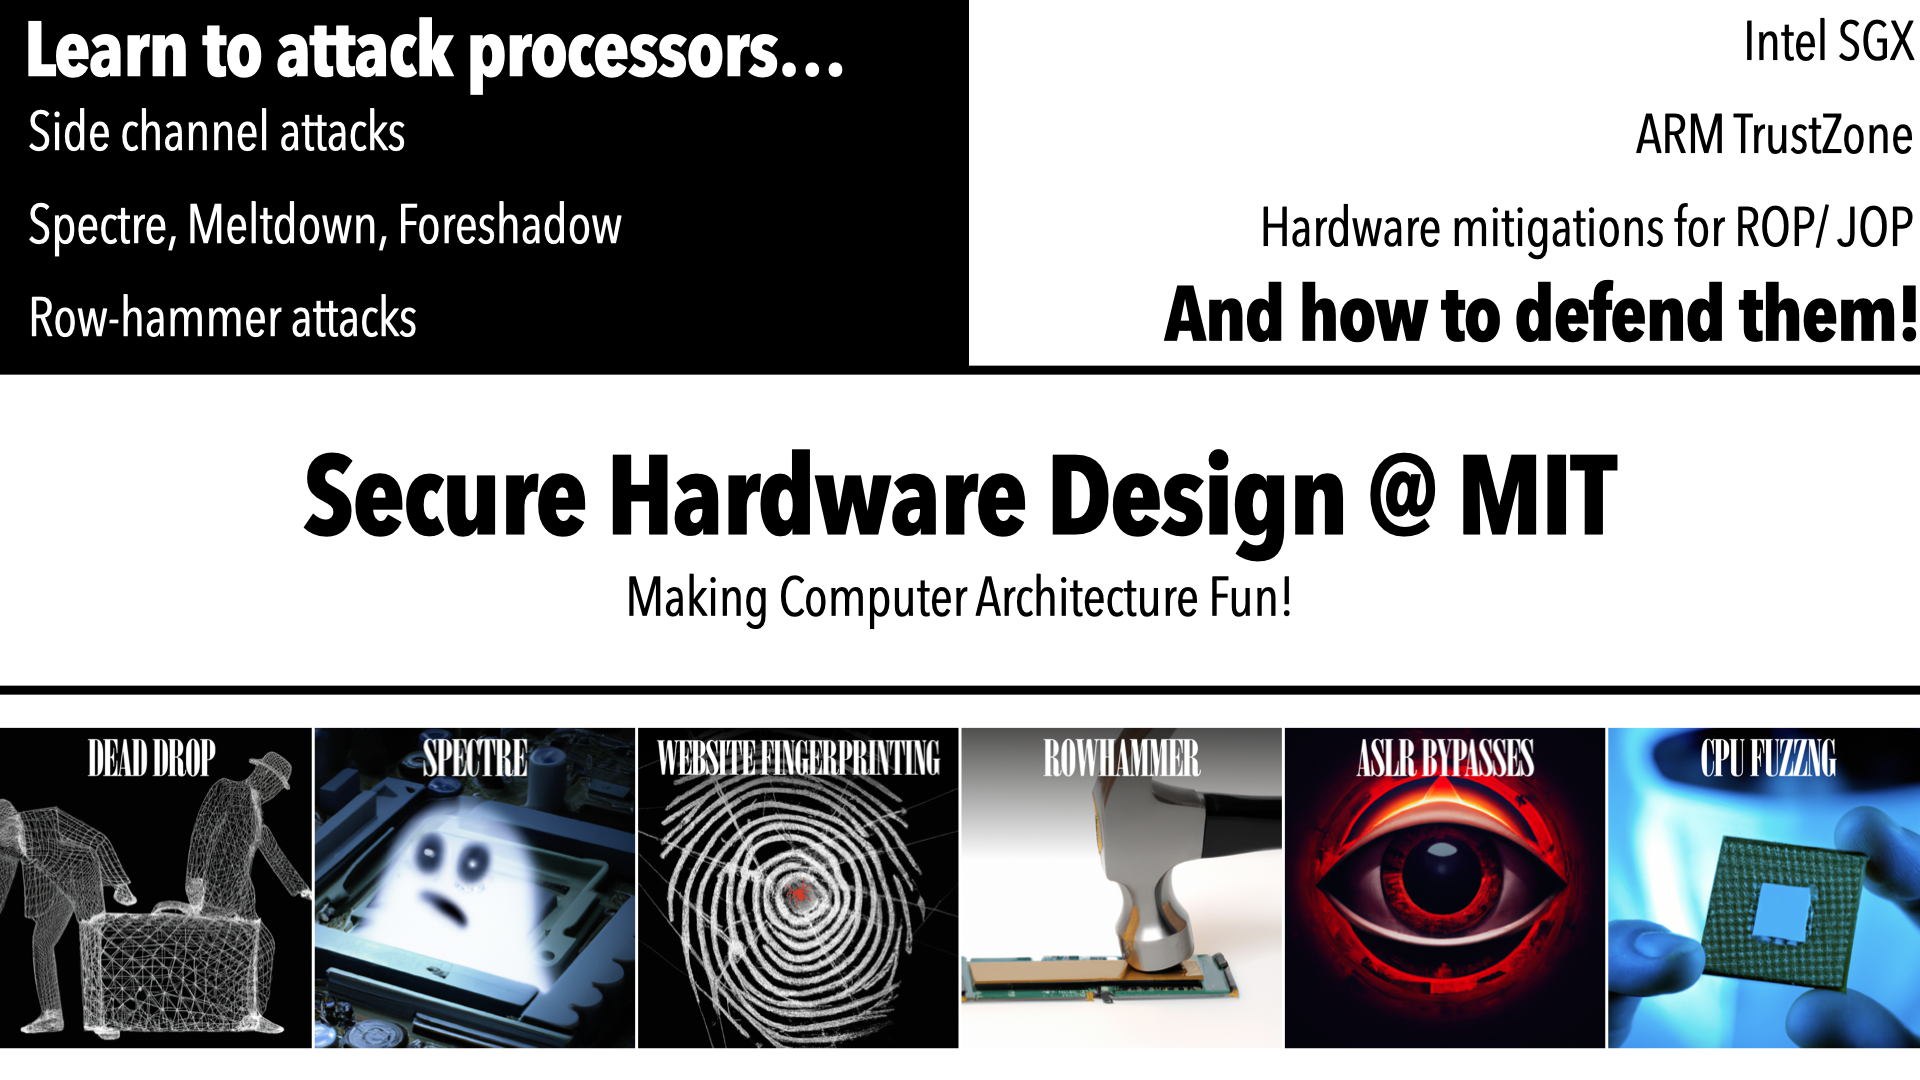 Secure Hardware Design
                                                       Course